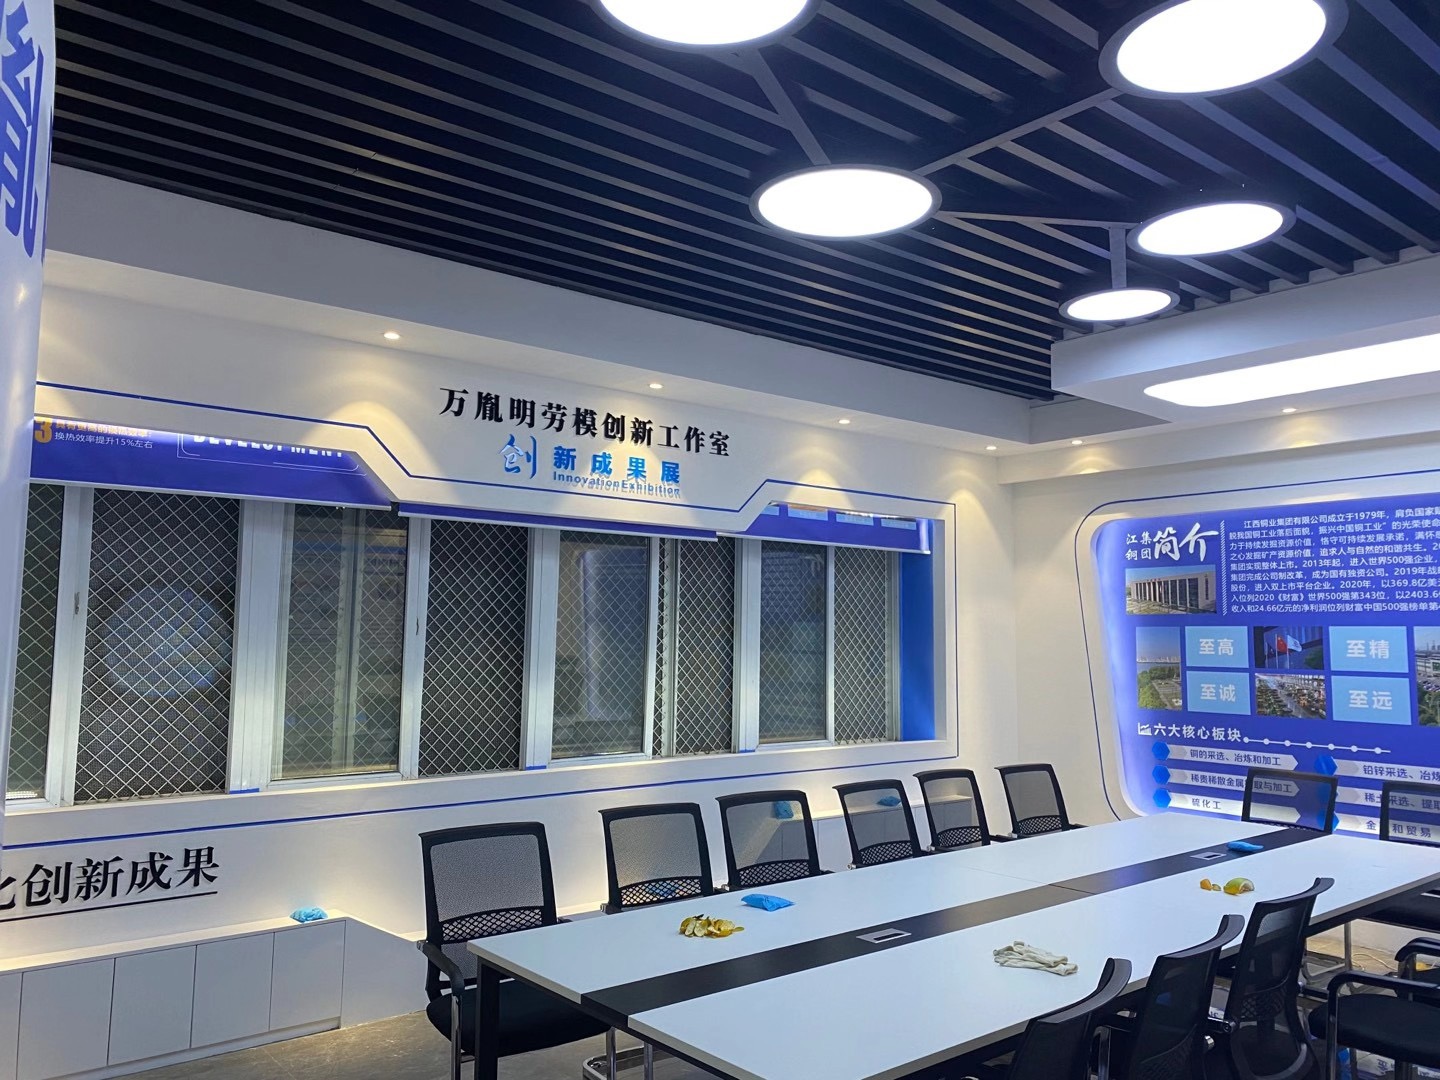 江西铜业集团有限公司劳模创新工作室设计方案